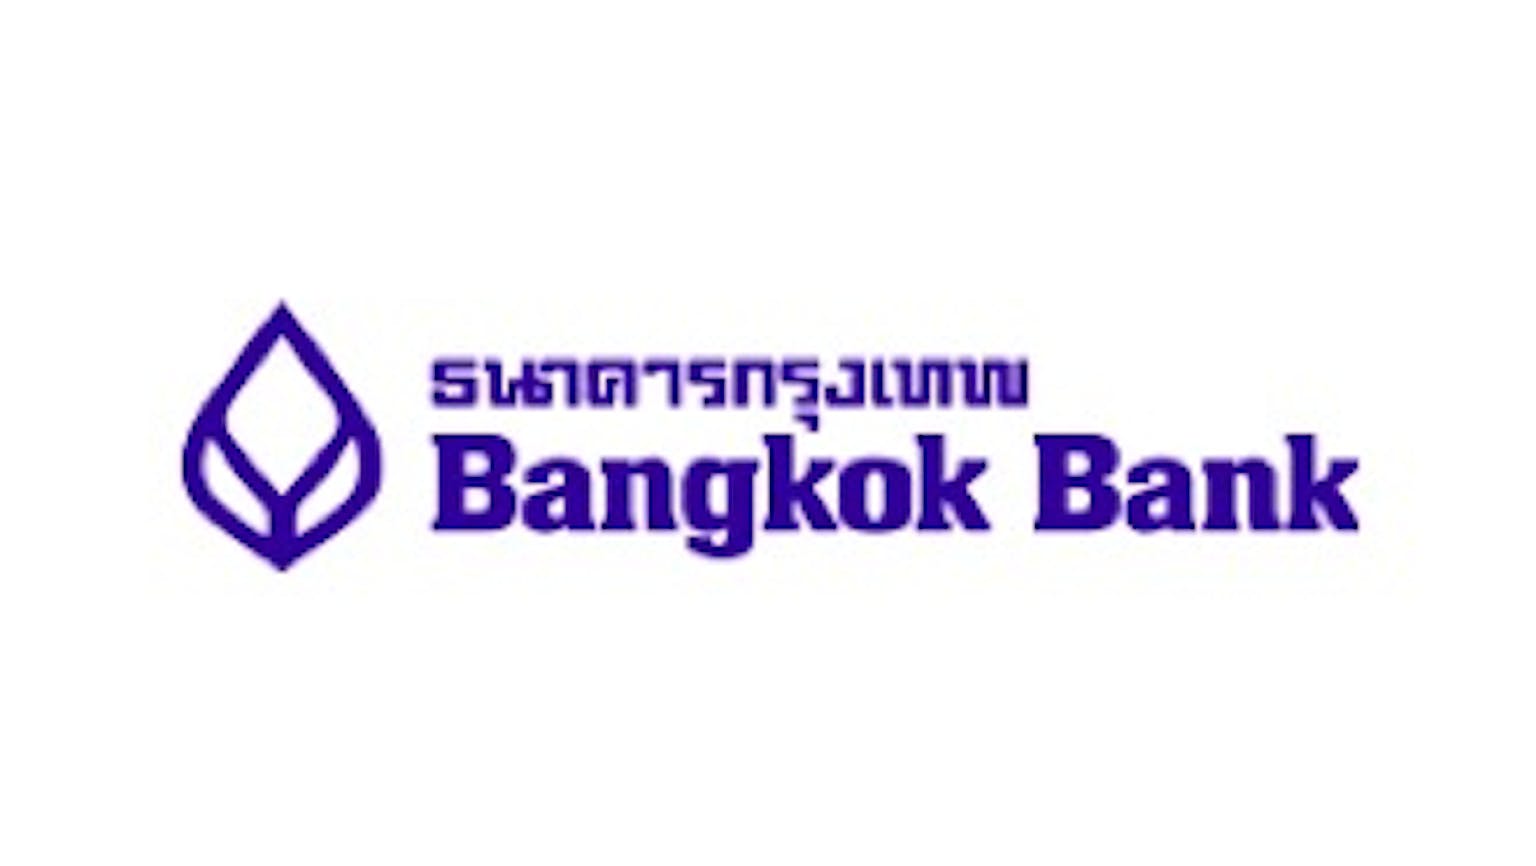 คนต่างชาติอยากจะเปิดบัญชีเงินฝากสะสมทรัพย์กับธนาคารกรุงเทพต้องใช้เอกสารอะไรบ้างคะ?  | Moneyduck Thailand